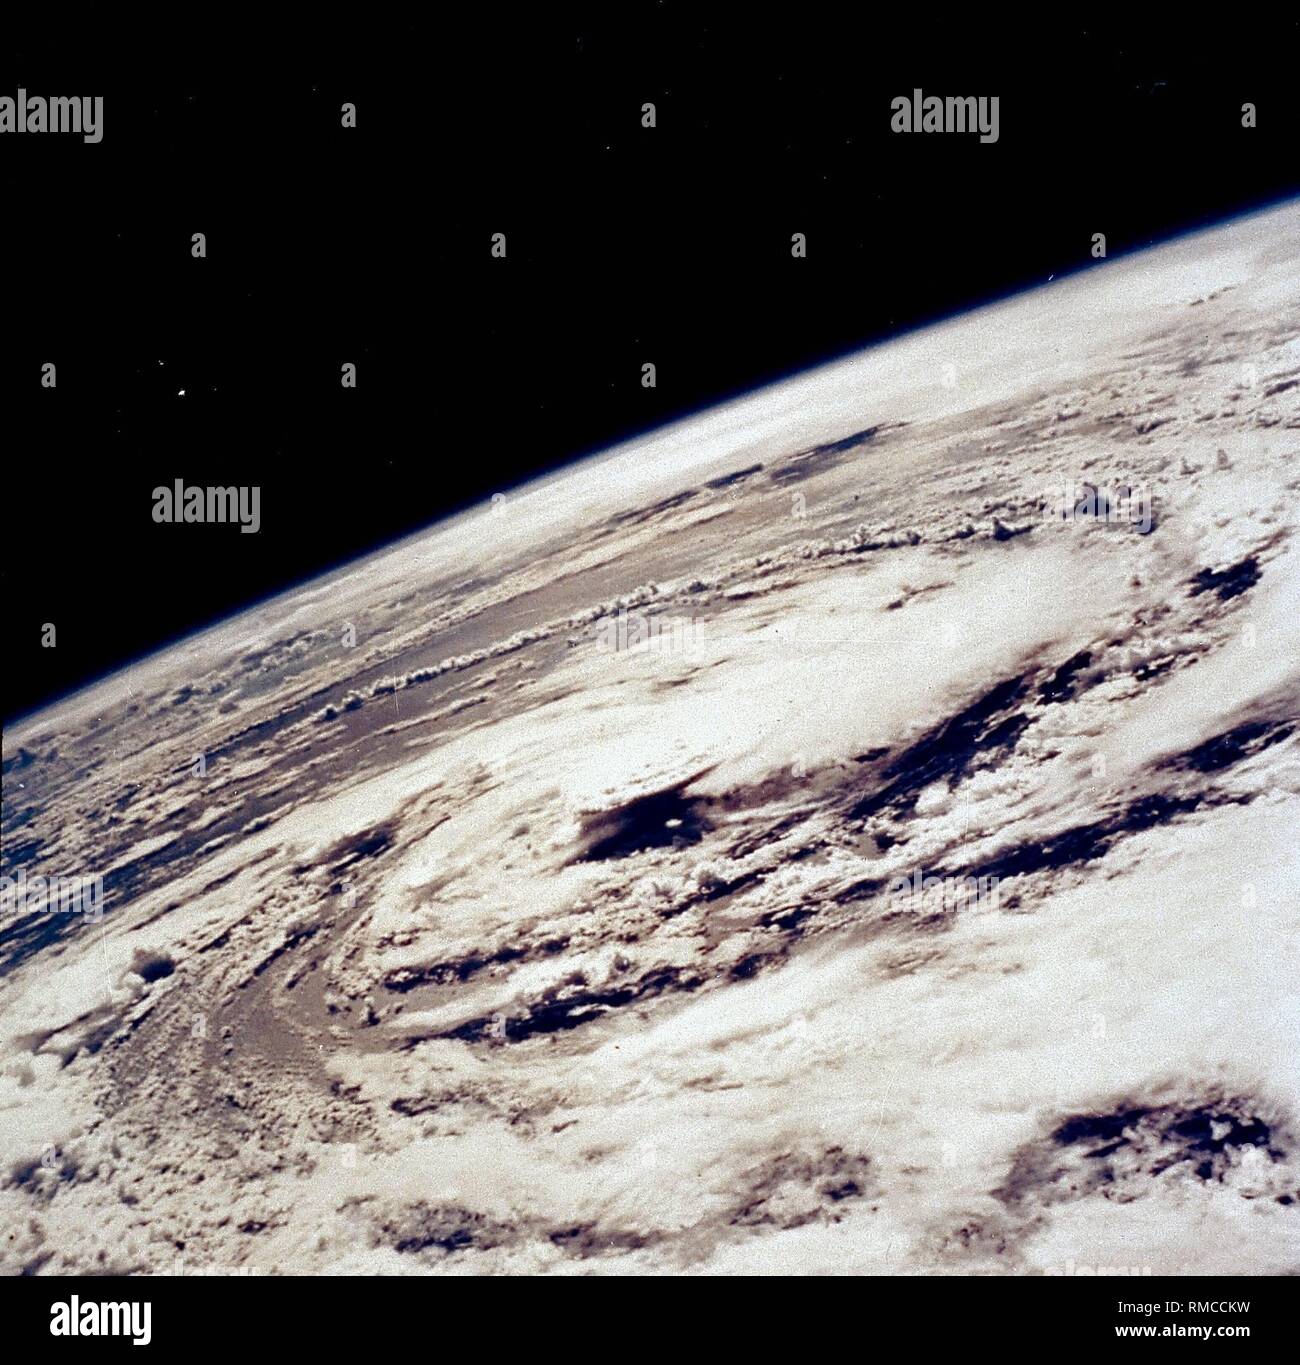 Detailansicht der Erde mit Hurrikan "Gladys". Das Foto wurde im Rahmen der Apollo 7-Mission der NASA. Stockfoto